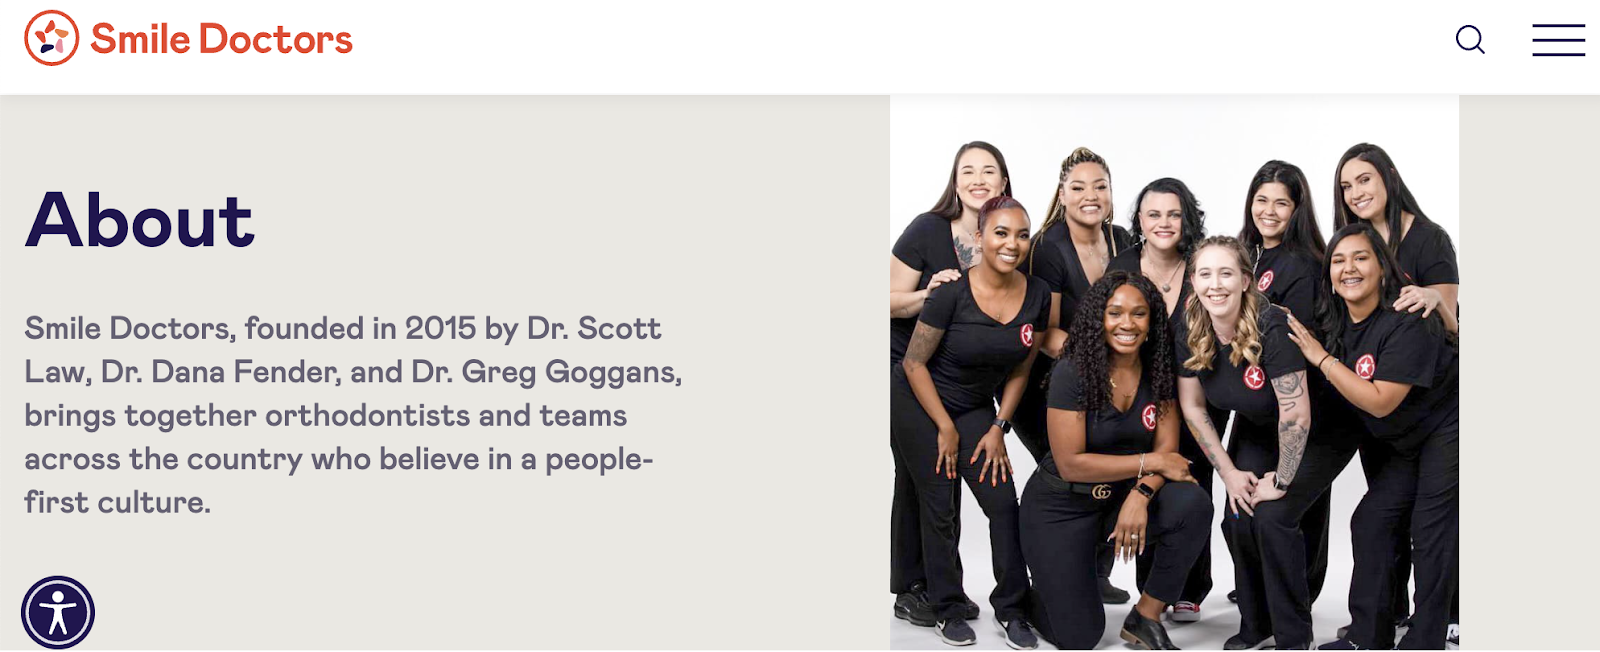 campagnes de marketing dentaire, page d'accueil de Smile Doctors